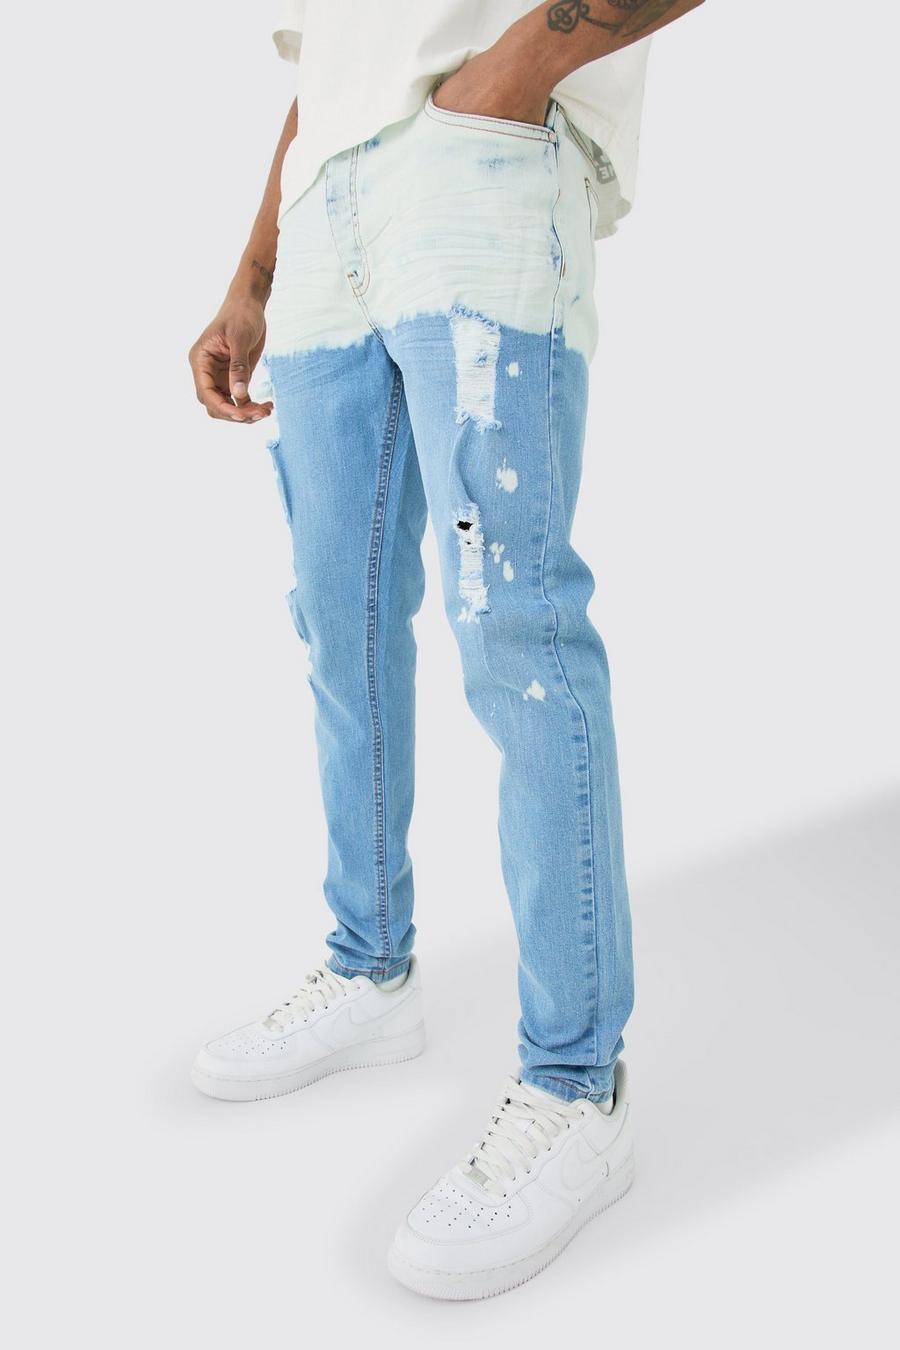 Tall hellblaue Stretch Skinny Jeans mit Farbeffekt, Light wash